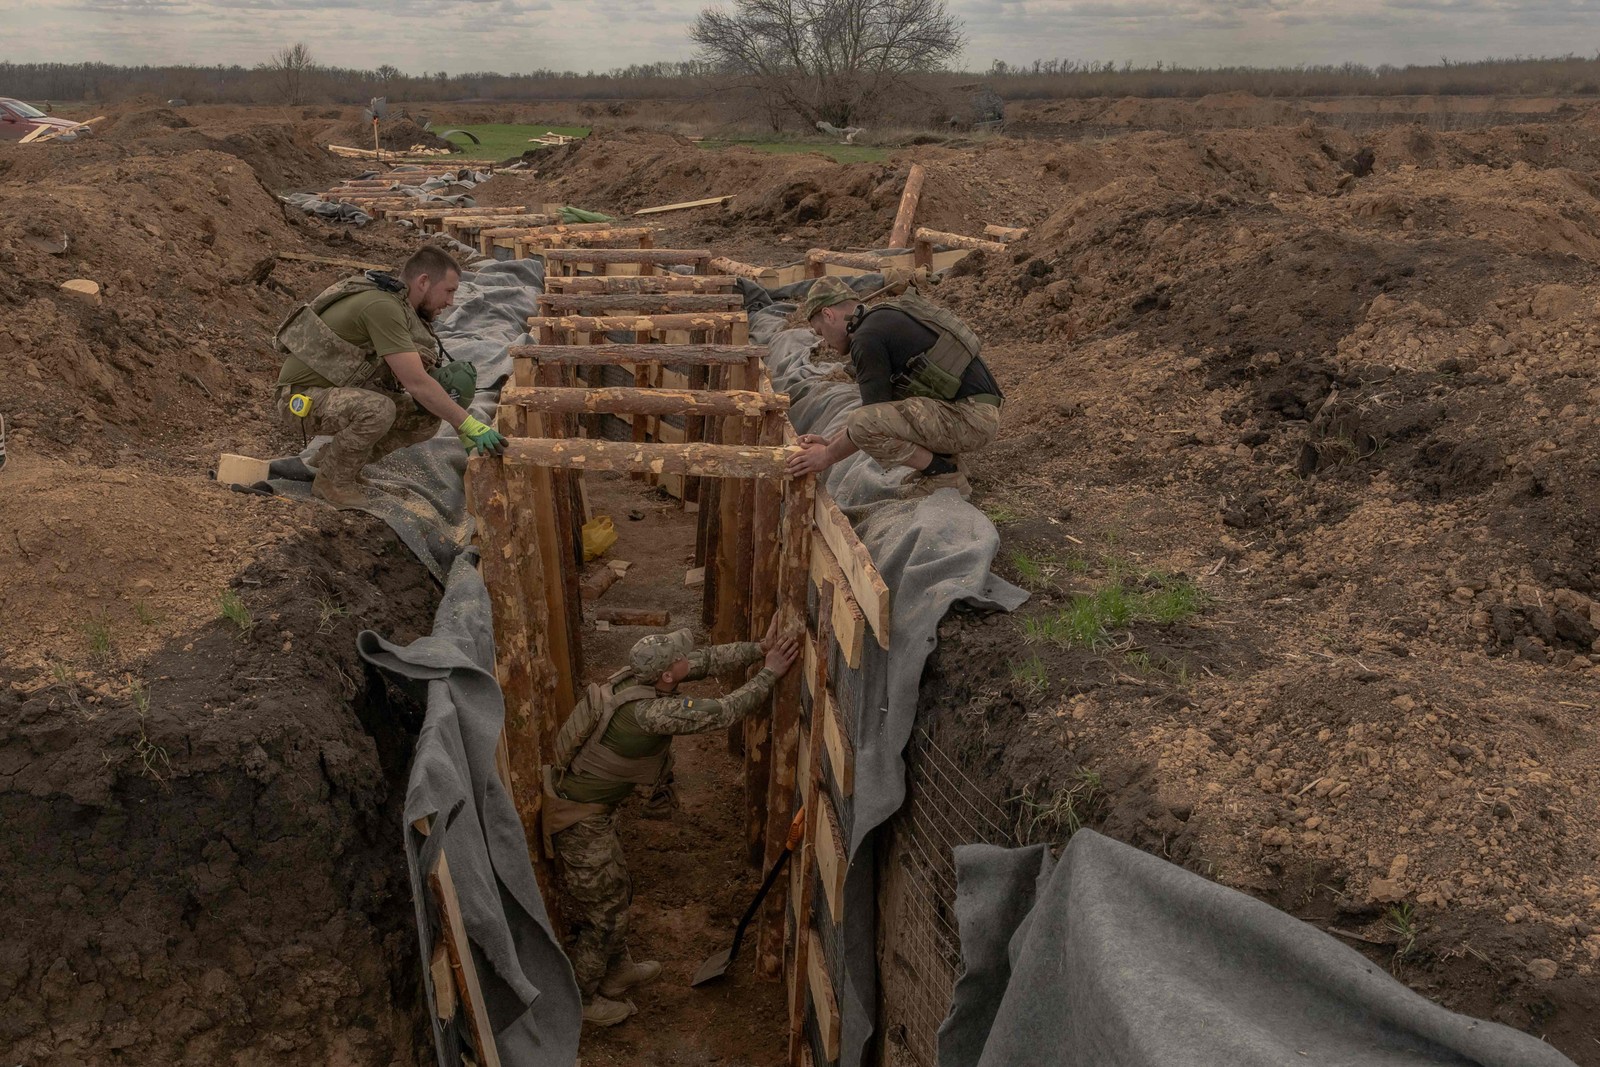 Mlitares ucranianos preparam um sistema de trincheiras na região de Donetsk, em meio à invasão russa na Ucrânia. — Foto: Roman PILIPEY/AFP